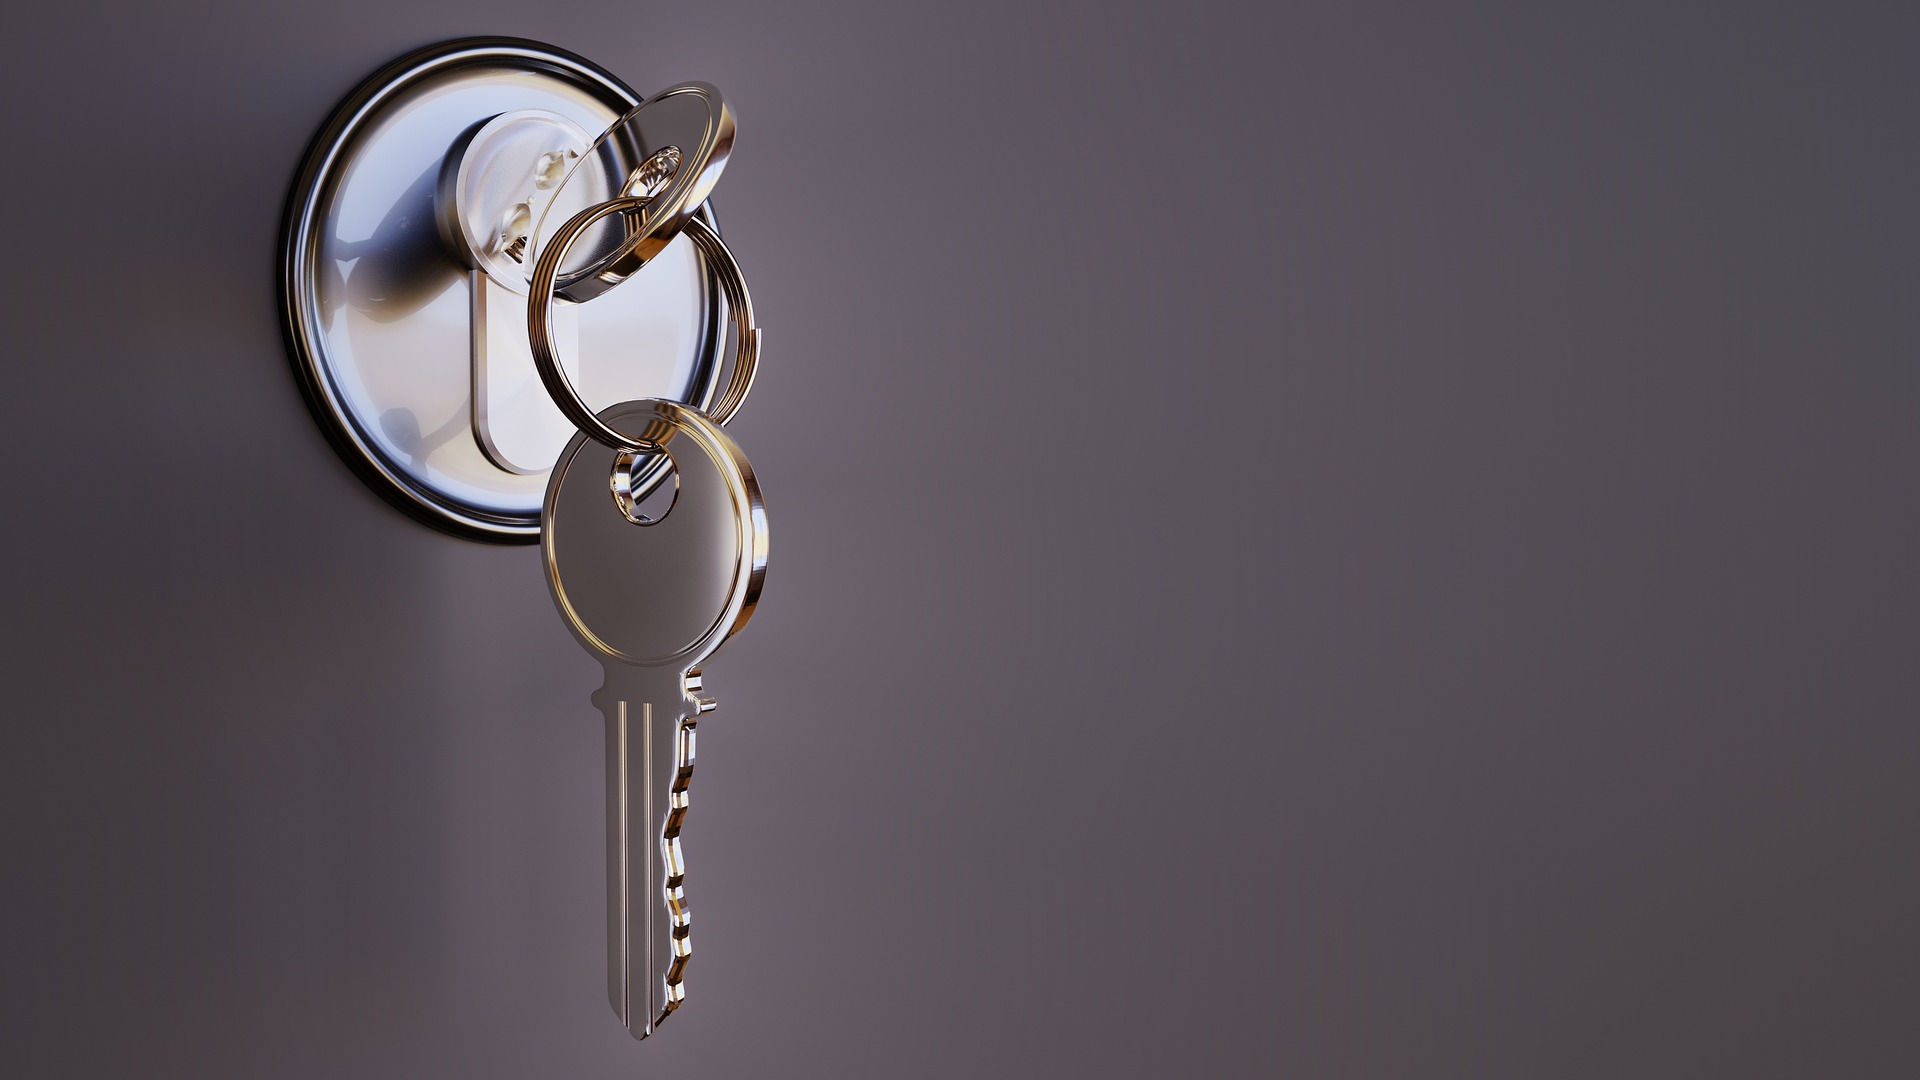 Keys in a lock